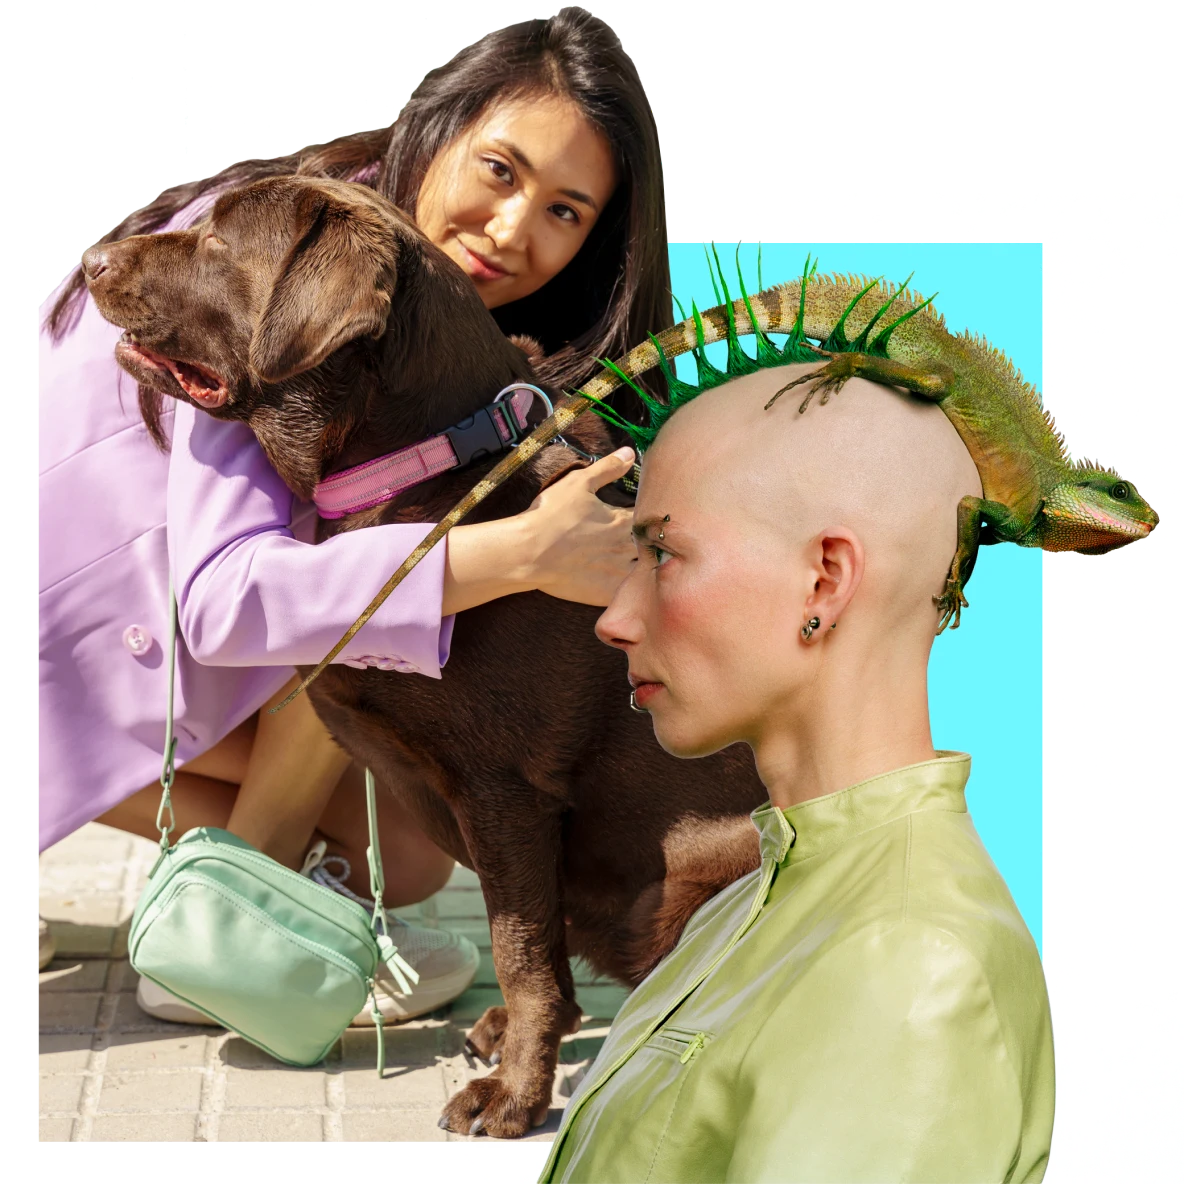 Eine ostasiatische Frau umarmt links einen braunen Hund. Rechts eine weiße Frau mit stacheligem Haar und einem Leguan auf dem Kopf.
